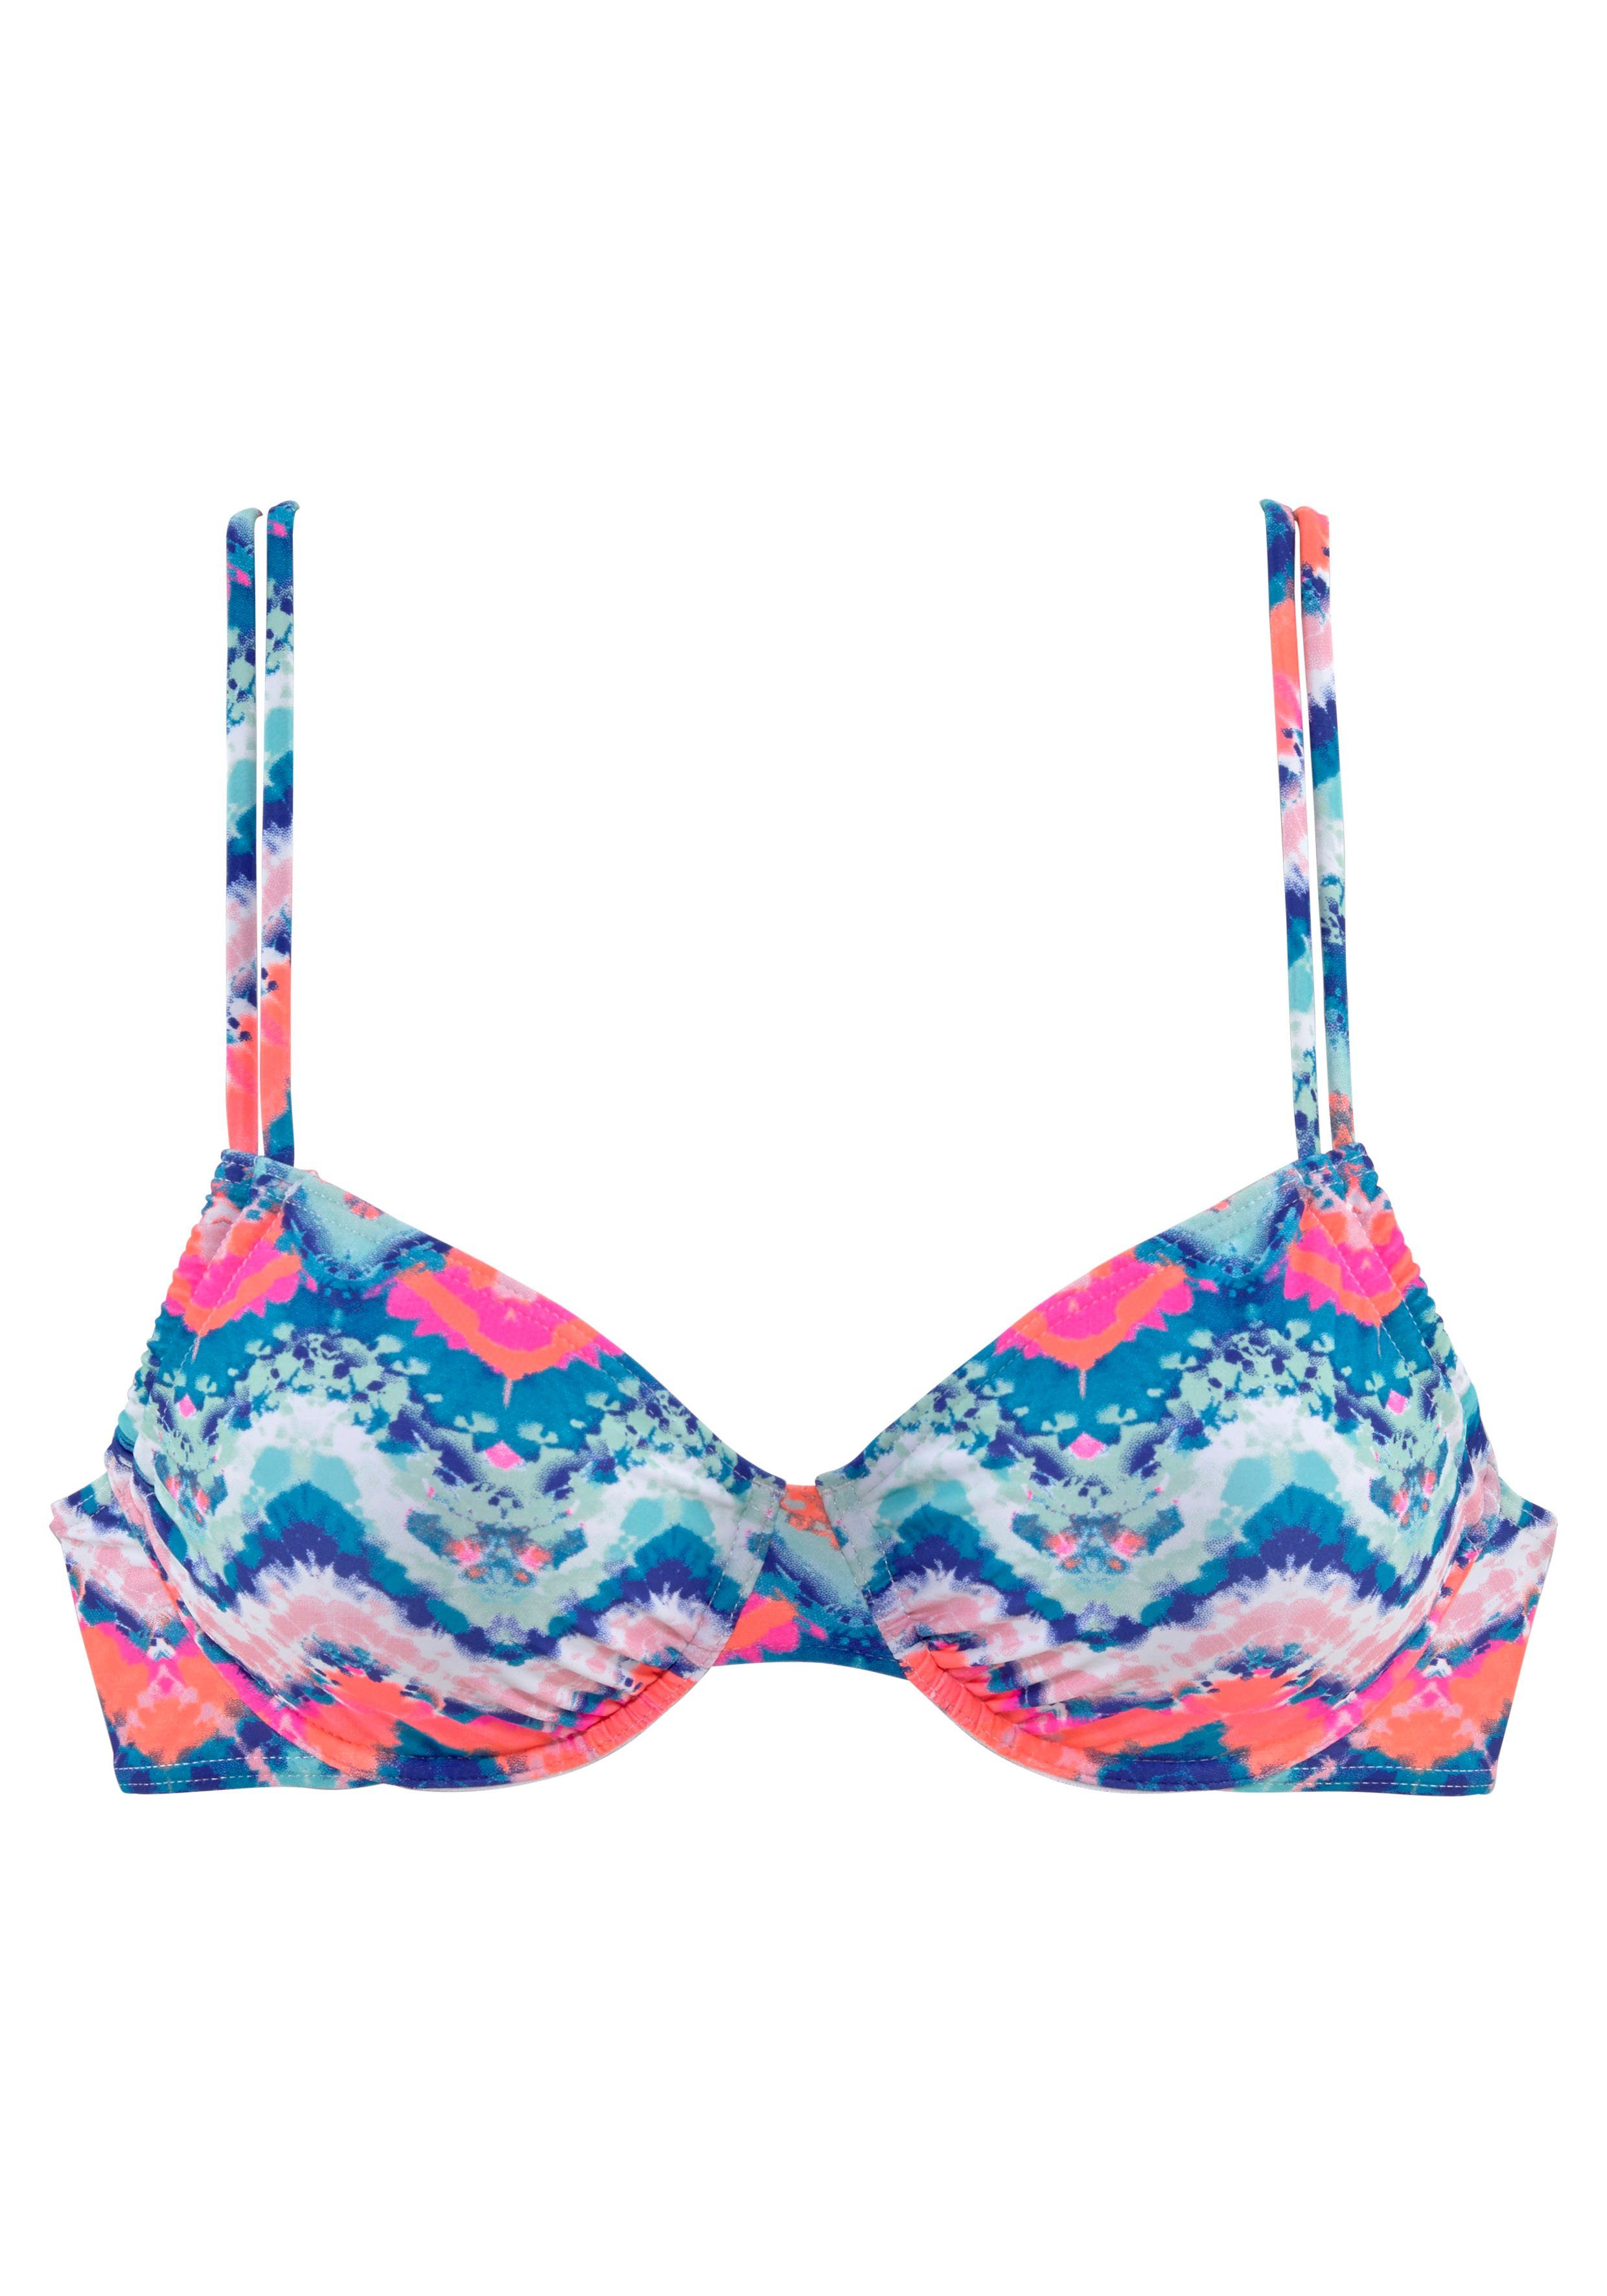 venice beach bikinitop met beugels face met uitneembare vullingen blauw